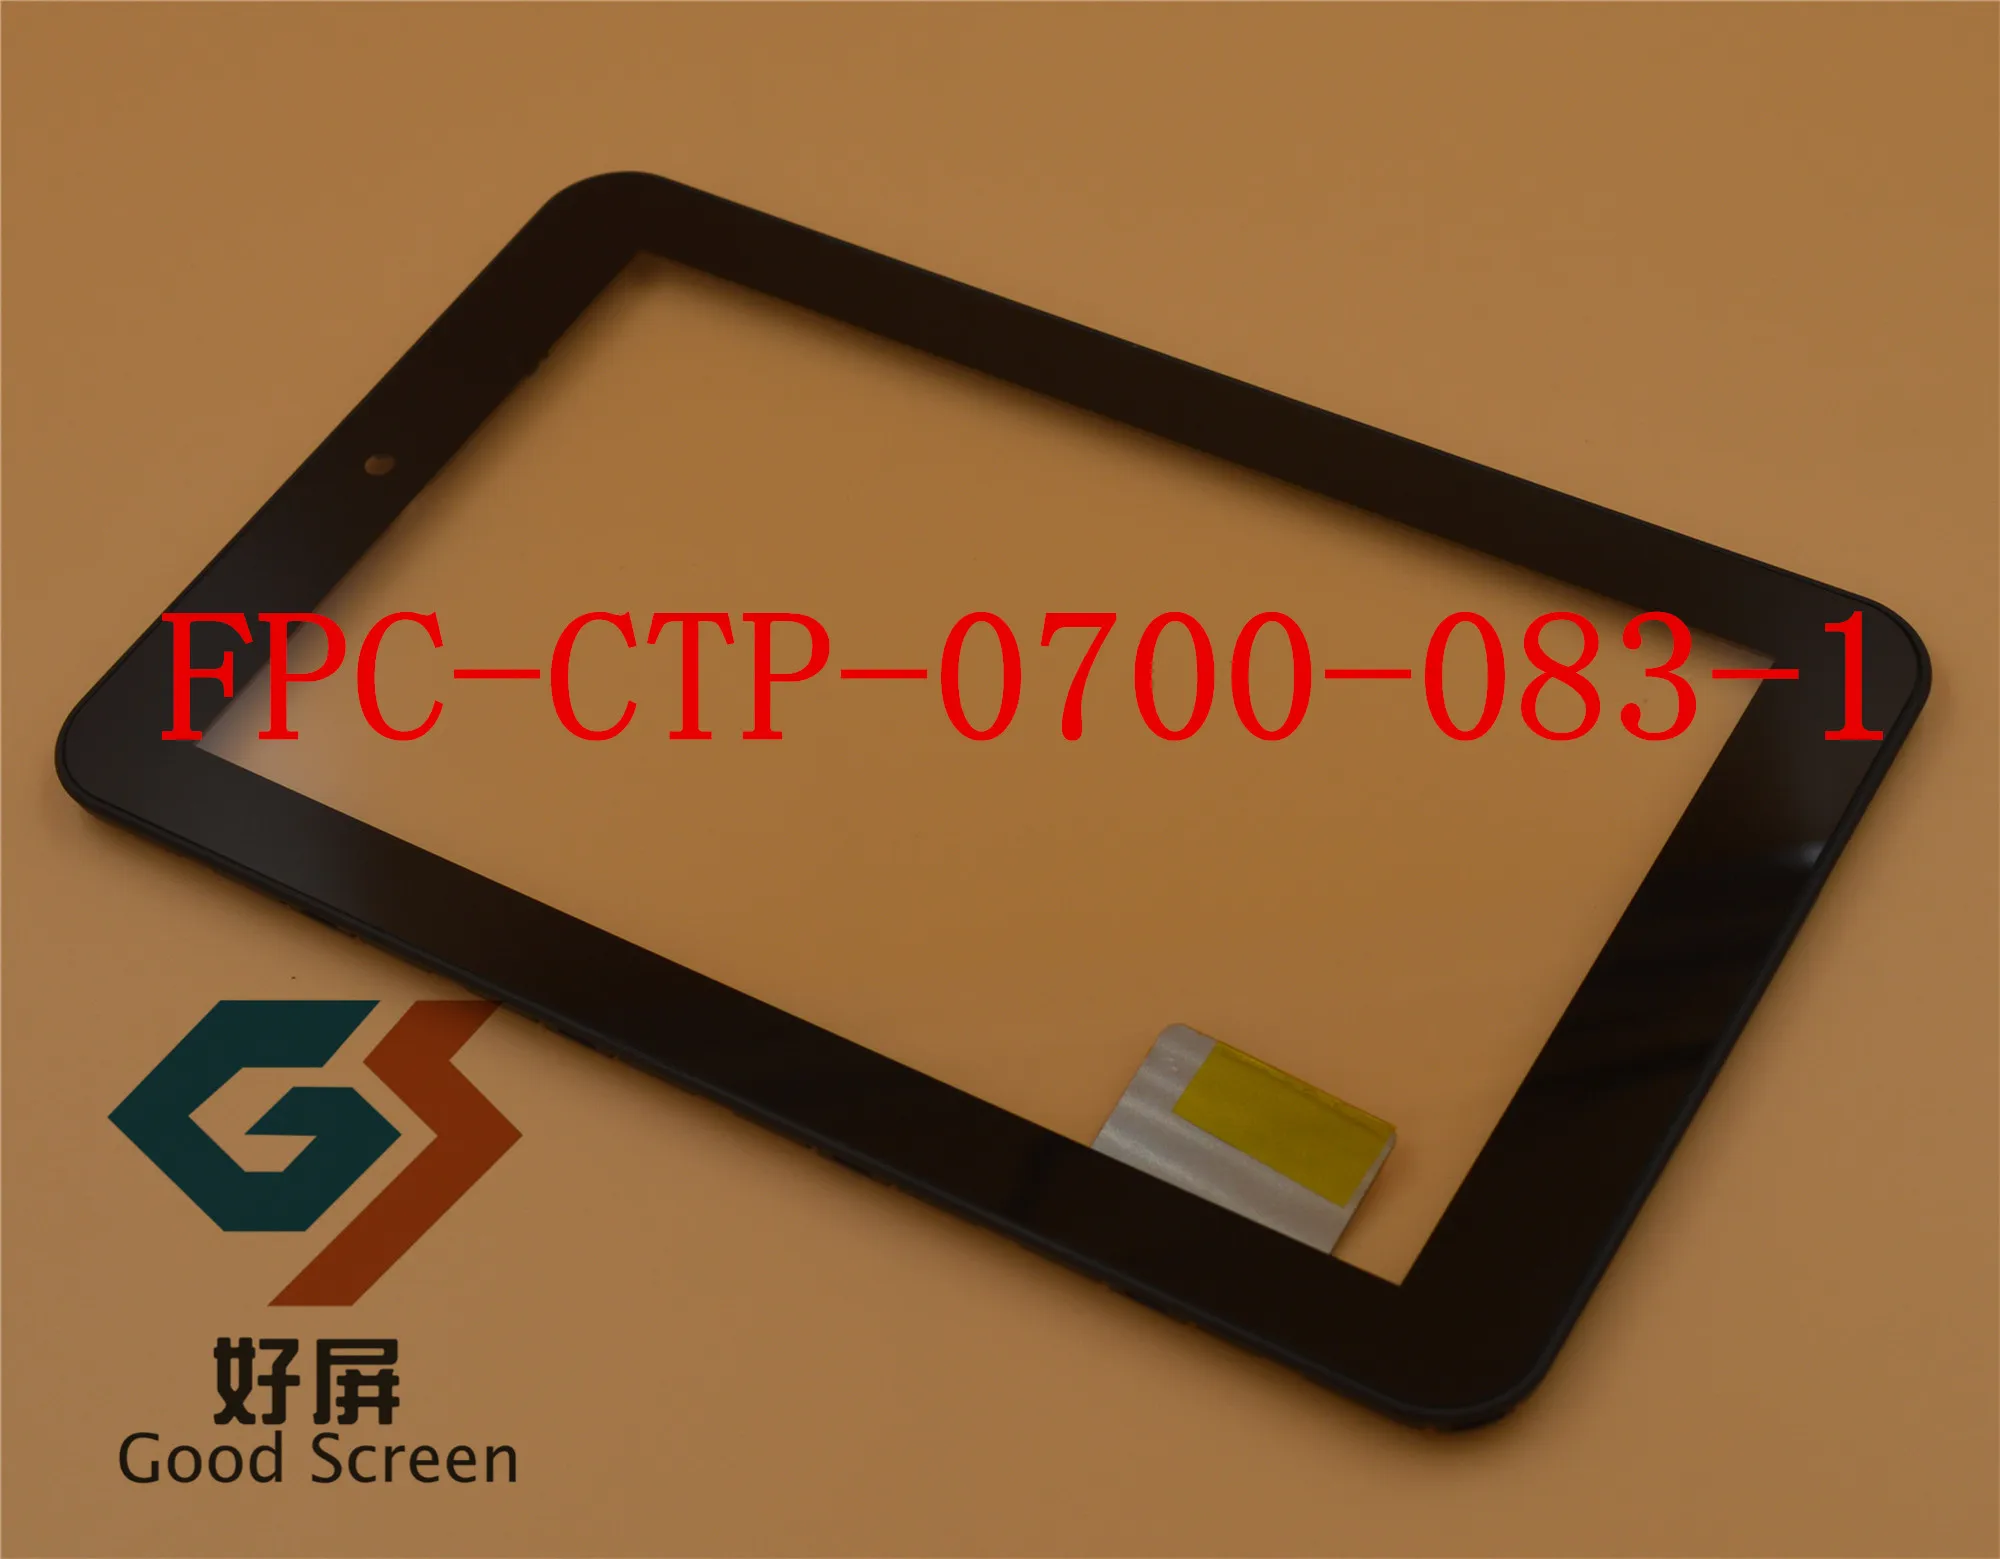 Чехол FPC-CTP-0700-083-1 " Prestigio multiPad 7,0 PMP5770d Prime Duo планшетный ПК сенсорная панель дигитайзер замена стекла